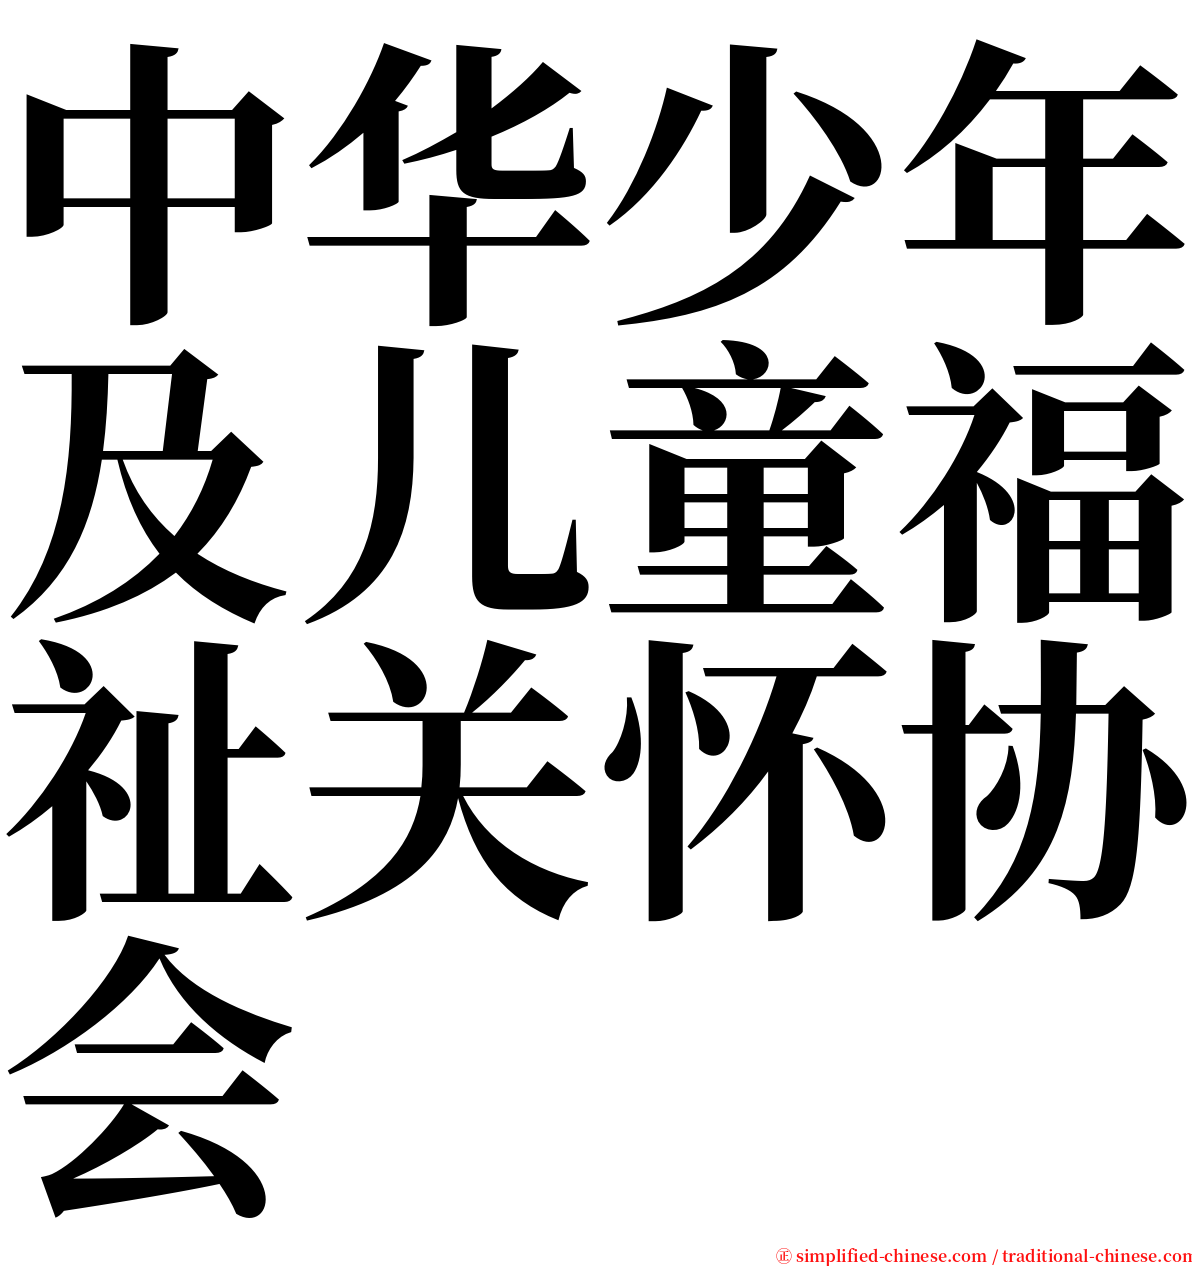 中华少年及儿童福祉关怀协会 serif font